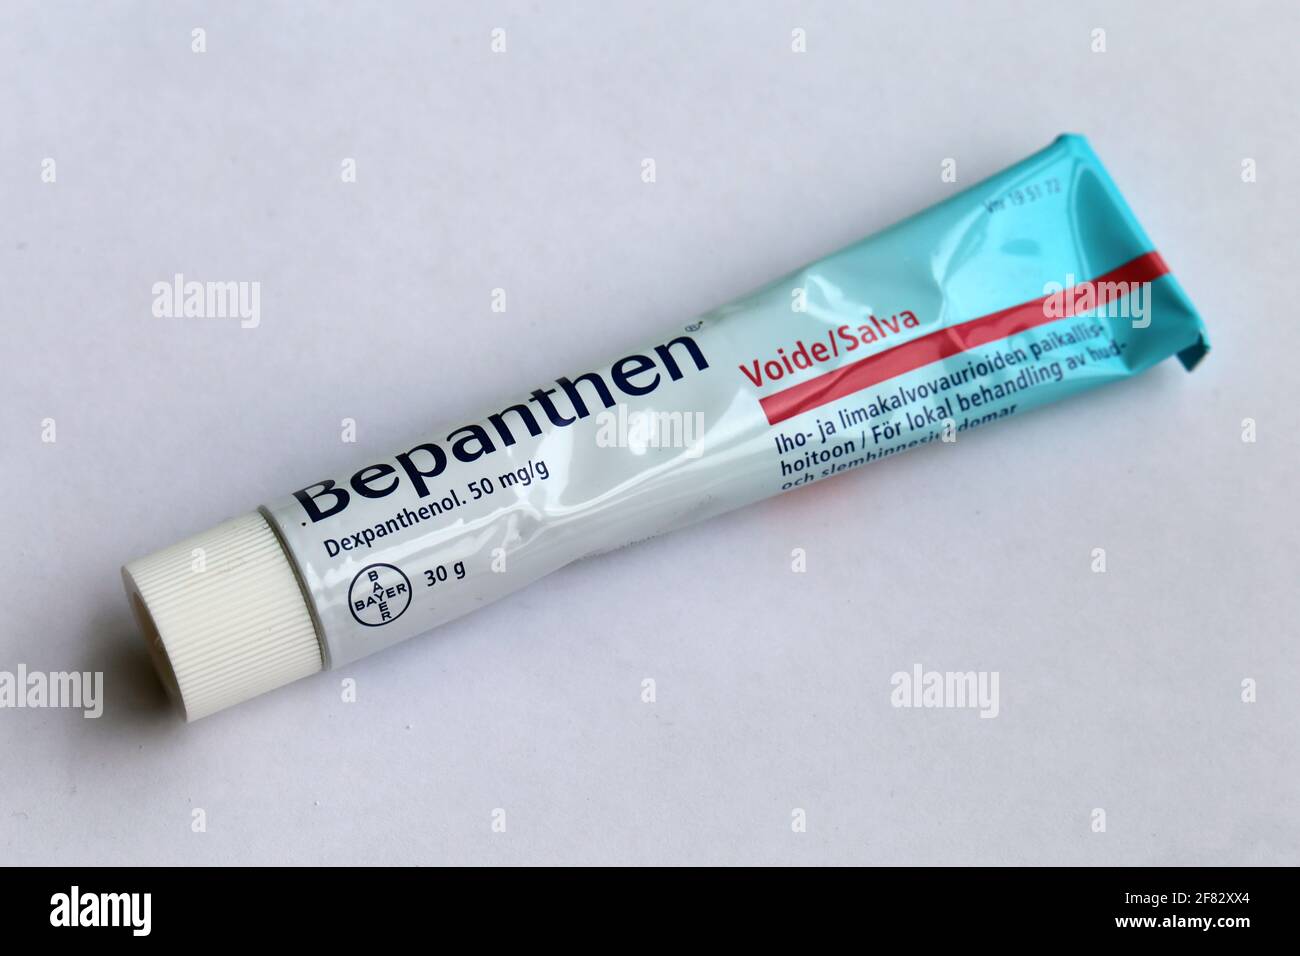 Bepanthen tube - Dexpanthenol Salbe verwendet, um verschiedene Haut und Schleimhaut Bedingungen zu behandeln. Gutes Medikament gegen Allergien, Juckreiz, kleine Verbrennungen und andere Krankheiten Stockfoto